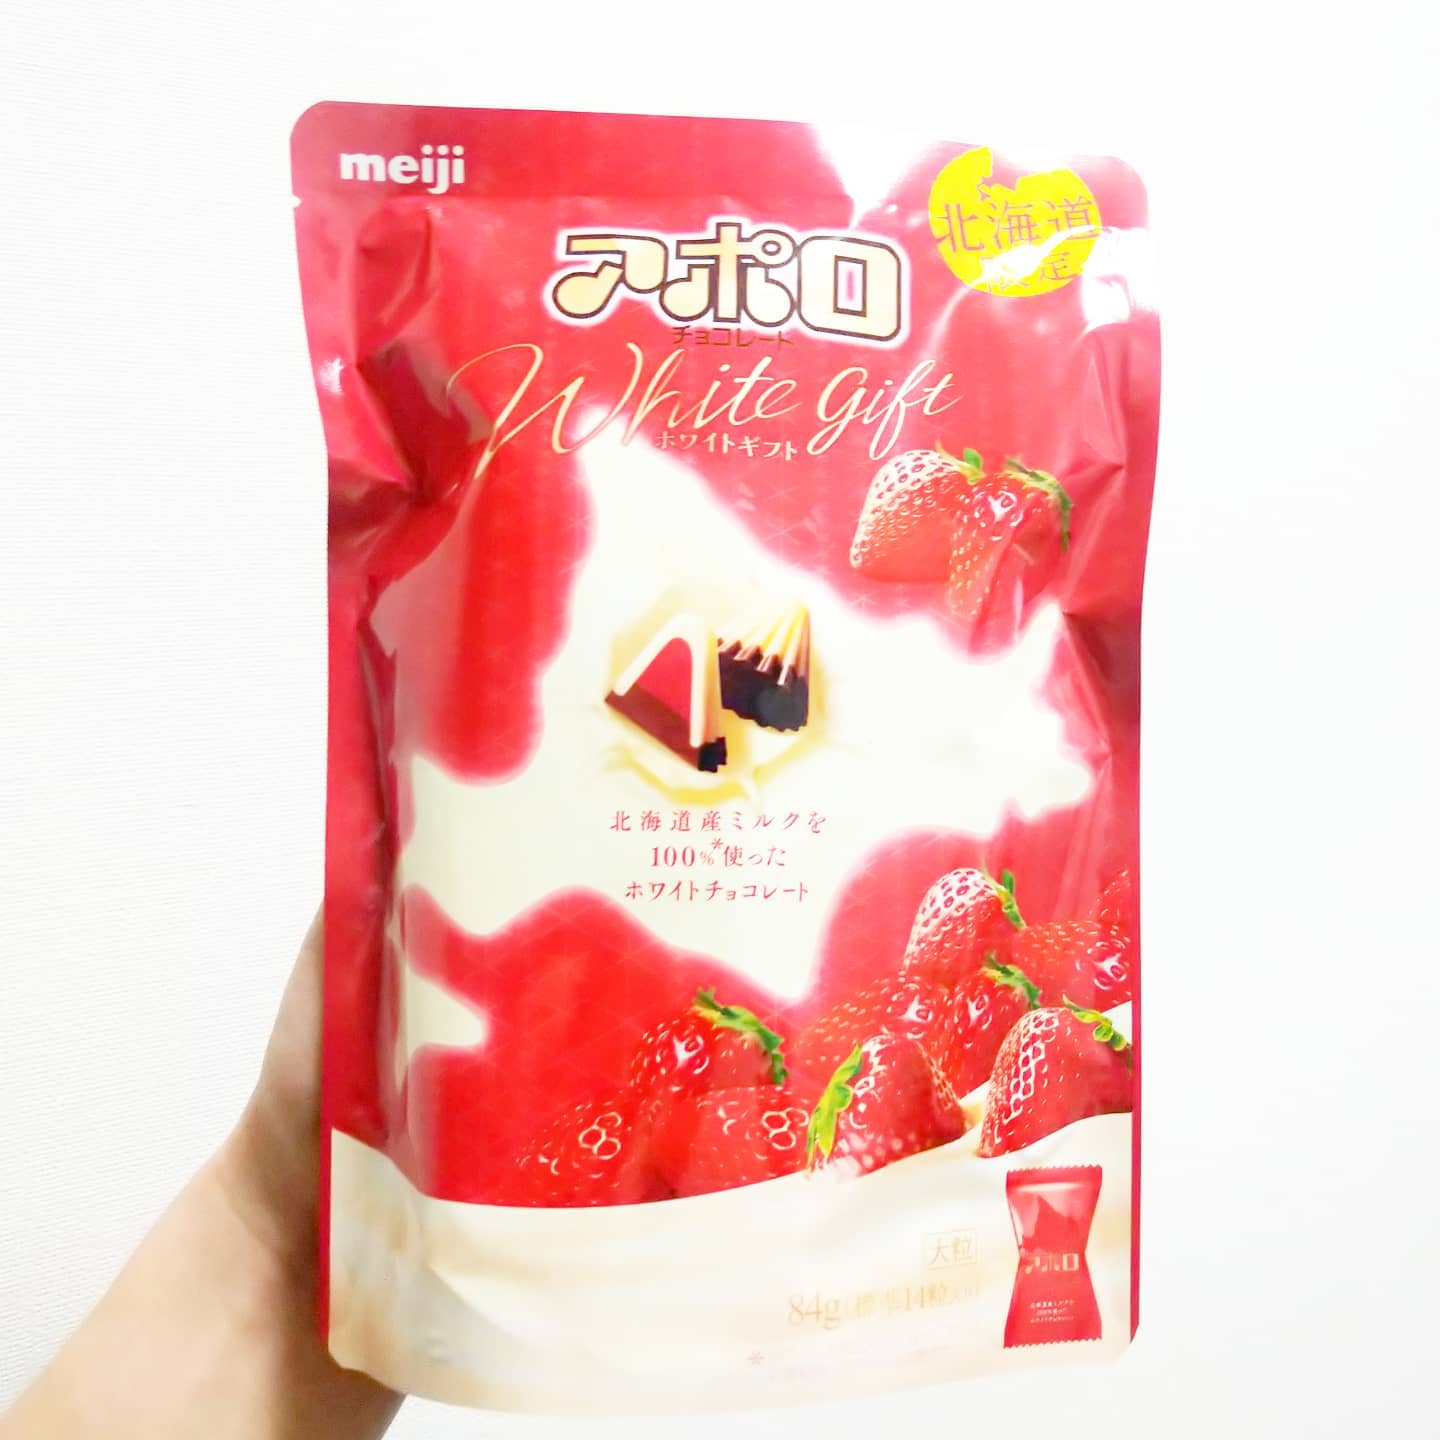 #いちご牛乳クラブ #アポロホワイトギフト #侍猫度☆☆☆★★ 北海道産のミルクを使った贅沢な苺アポロだね。ちゃんと酸味感じる苺系の味で謎苺感は控えめだね。アポロではかなり美味しいと思う。 #いちごオレ #いちご牛乳 #イチゴ牛乳 #苺牛乳 #メソギア派 #糖分